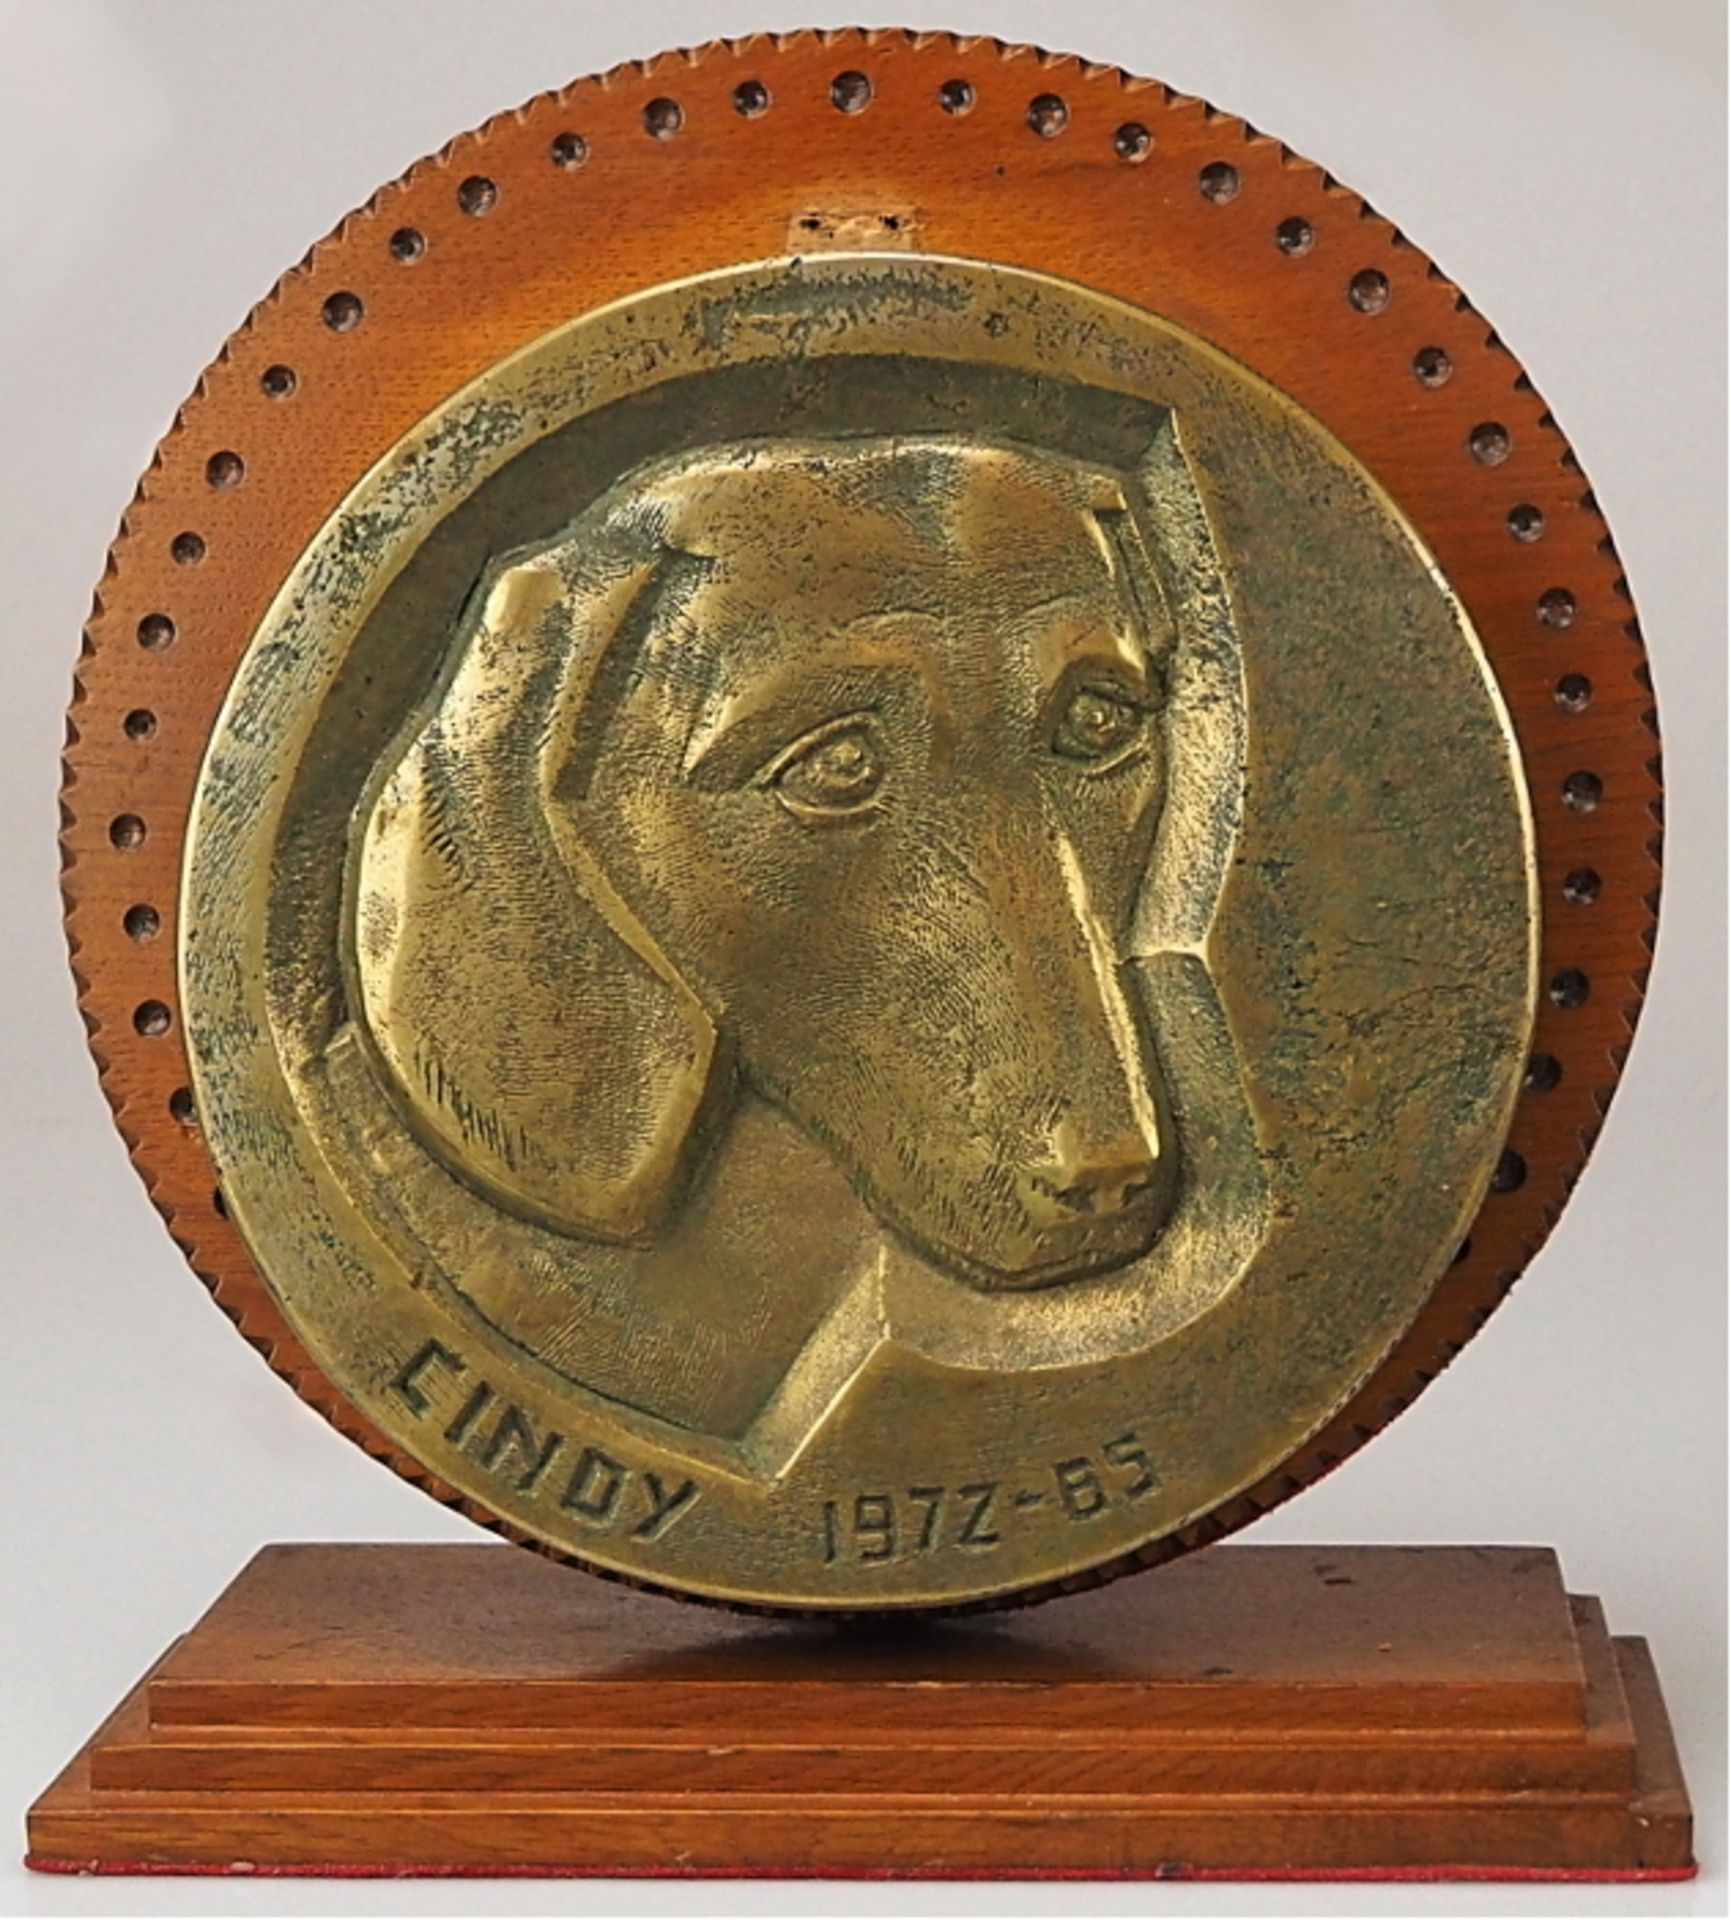 1 Memorabilia/Bronzeplatte "Cindy 1972-85" am Rand bezeichnet JECZA